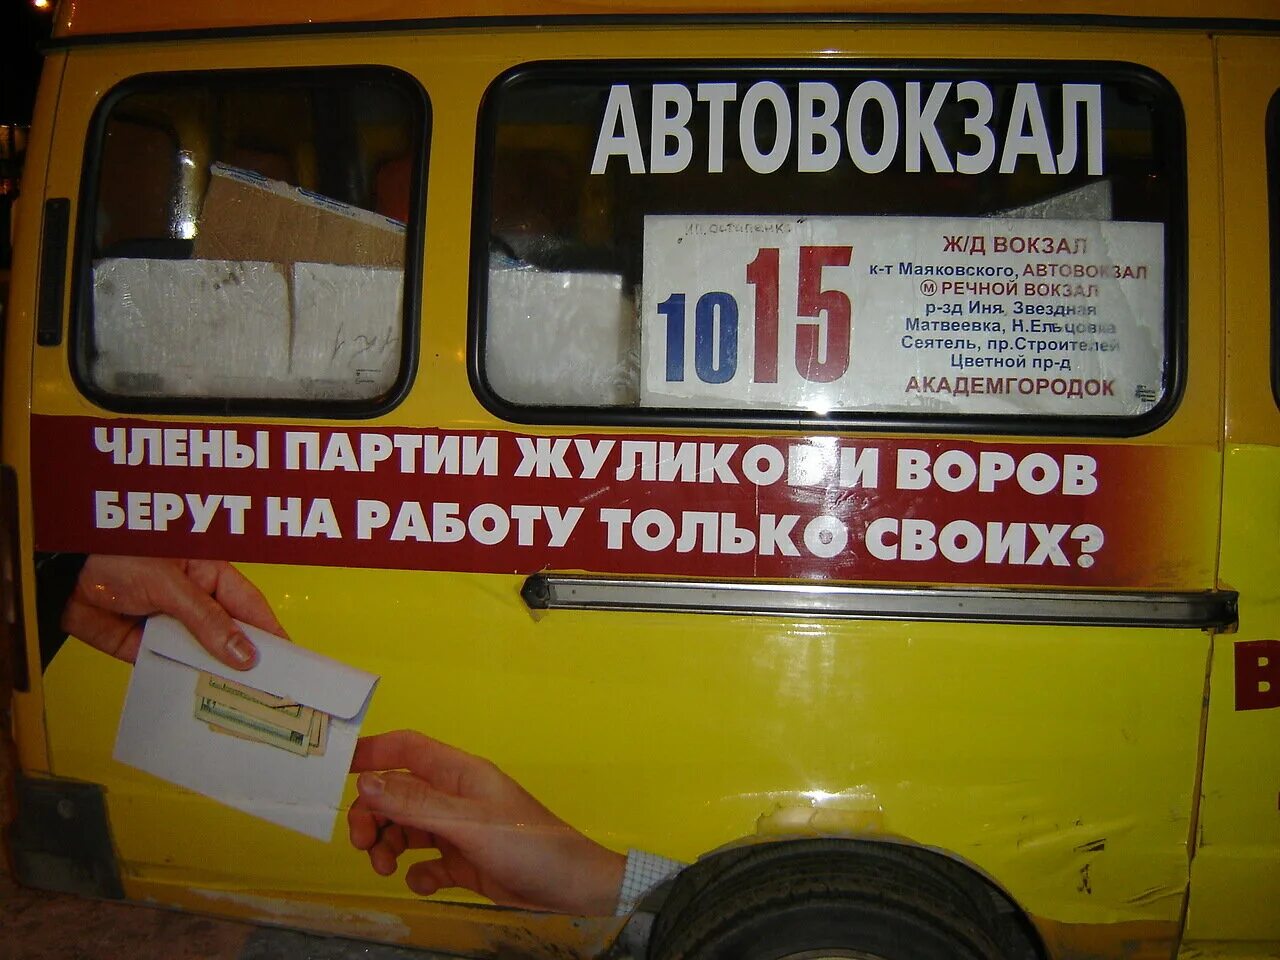 Маршрутка 1 текст. Справедливая Россия лозунги на автобусах реклама. Справедливая Россия без жуликов и воров.